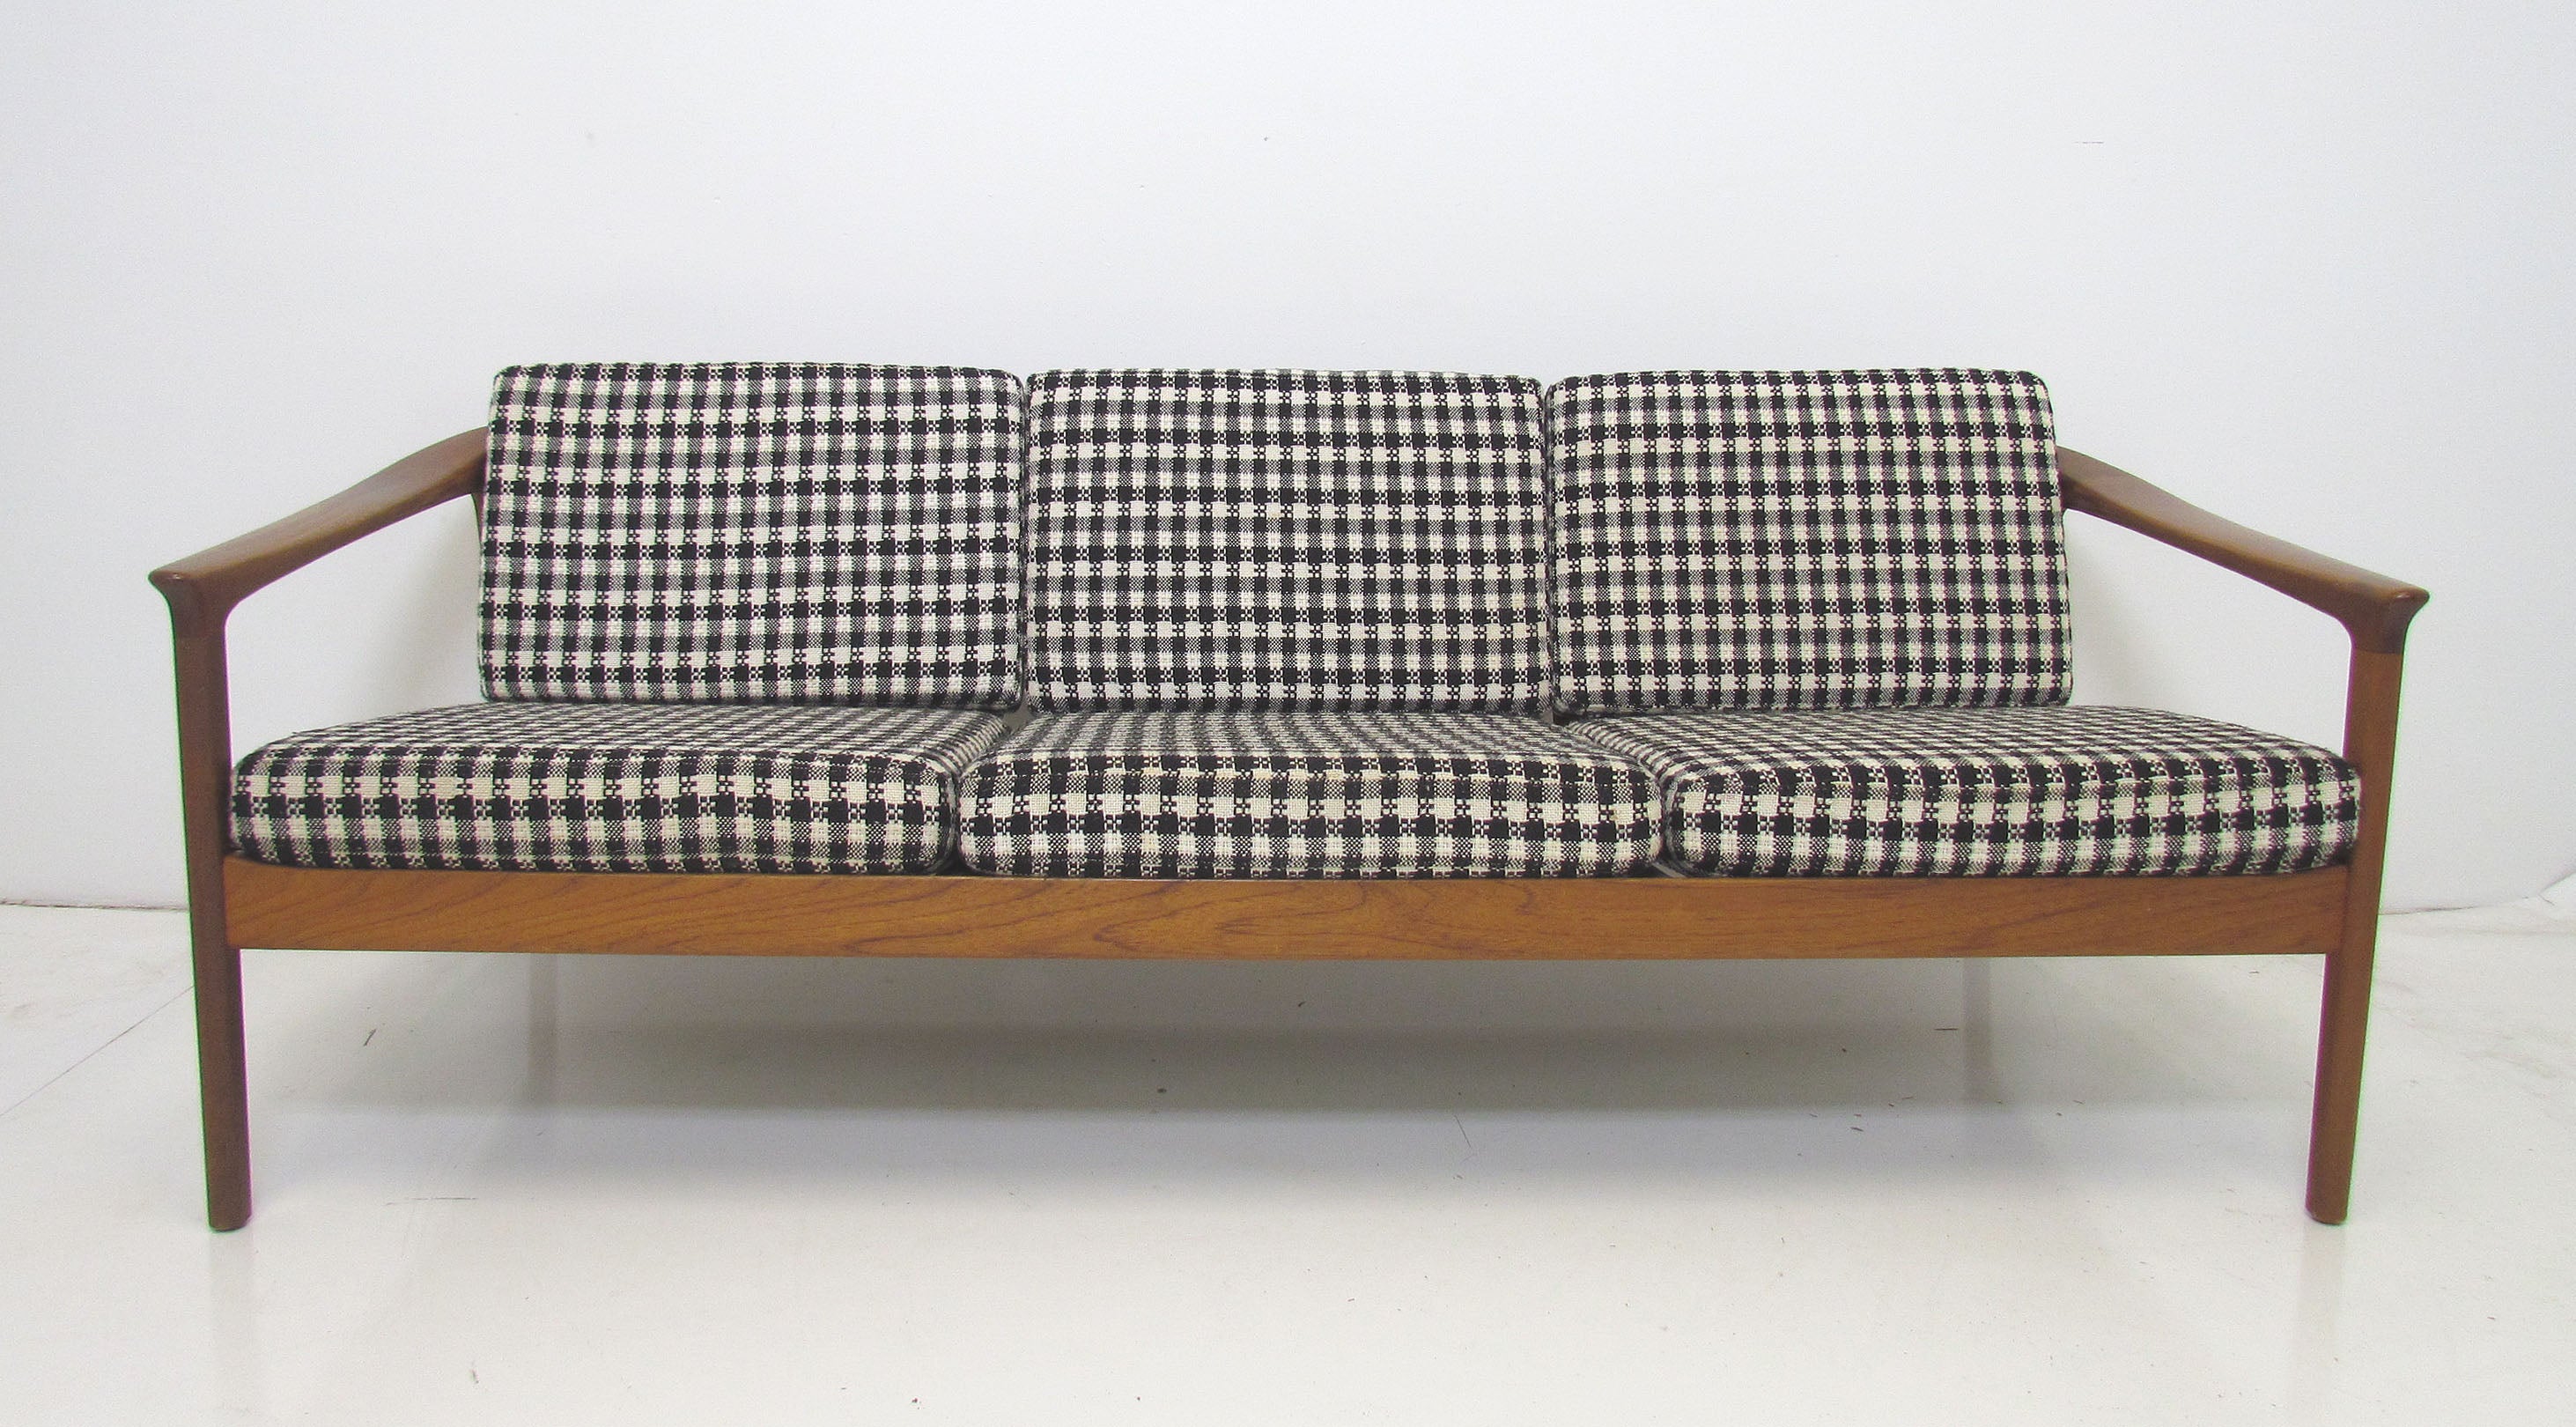 Danish Modern Teak Sofa by Folke Ohlsson for Dux, ca. 1960s